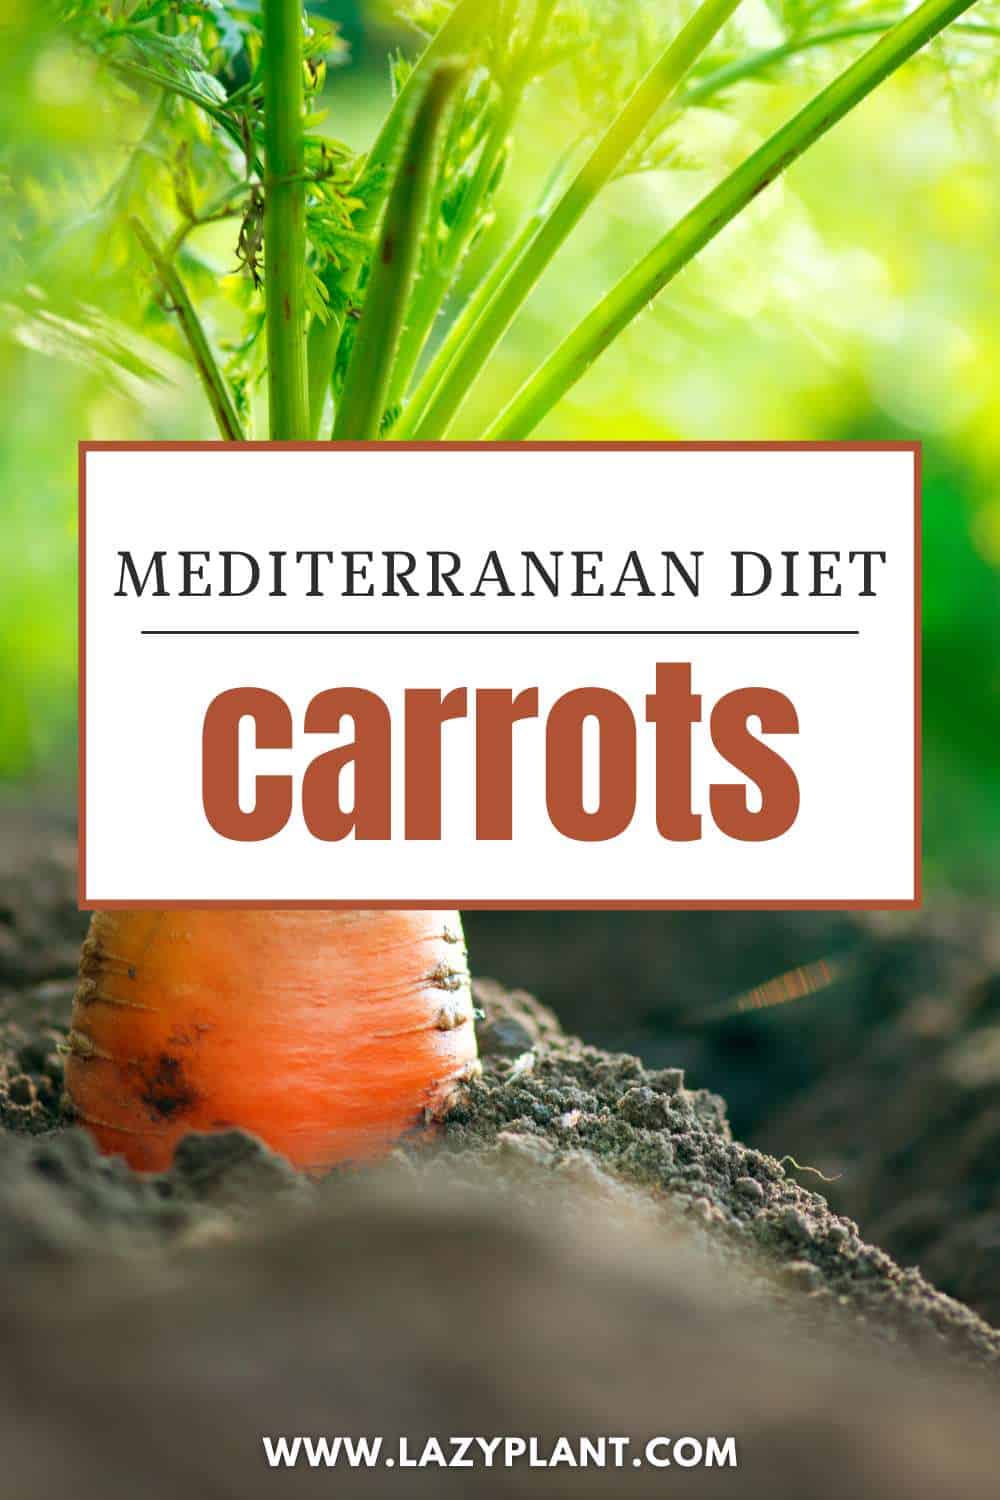 Benefits of Carrots in Mediterranean Diet